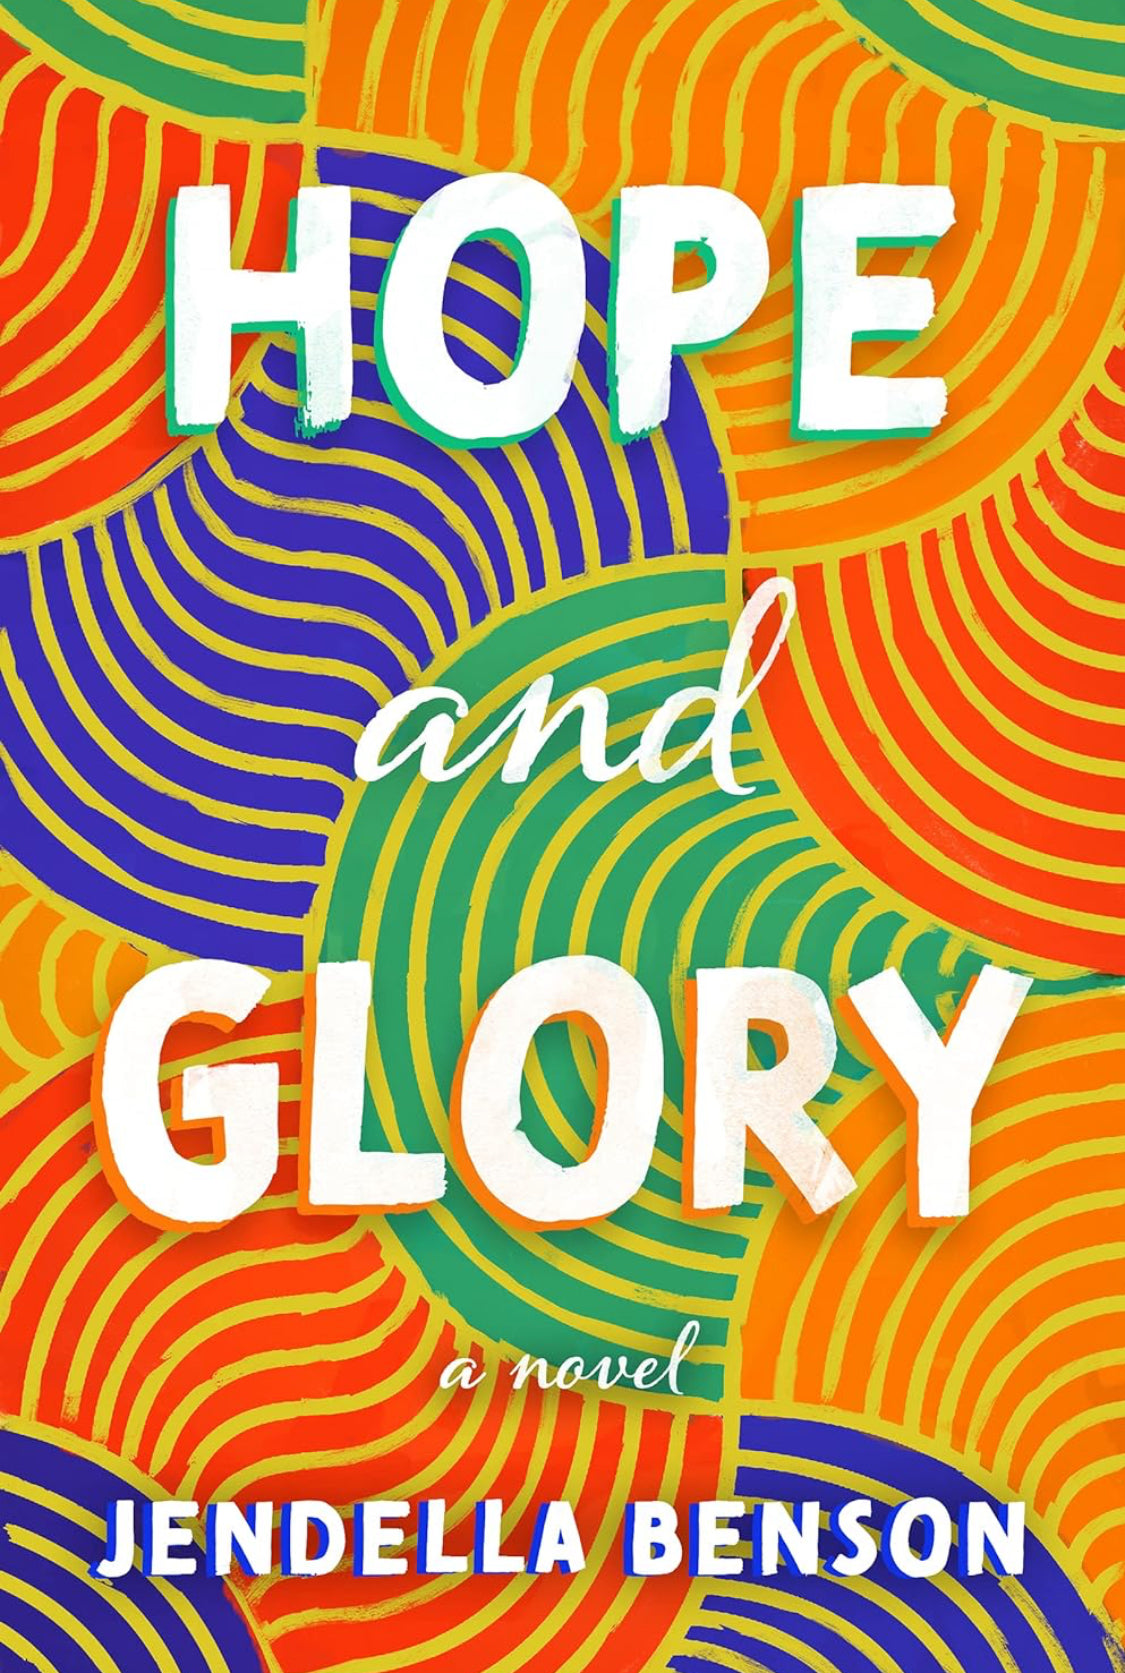 Hope and Glory: A Novel